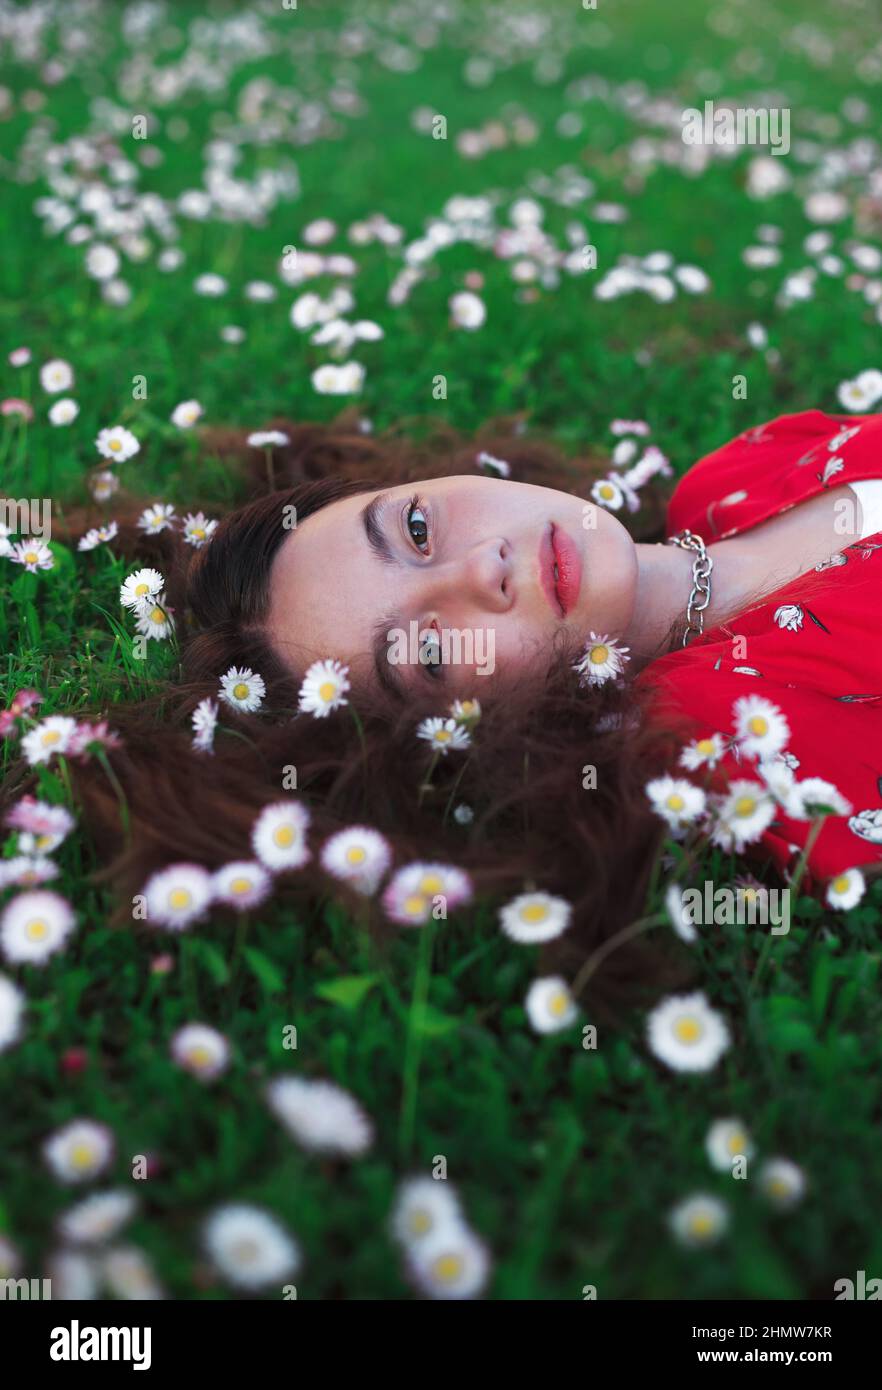 Junge schöne Mädchen in rotem Kleid ruht auf frischem Frühlingsgras mit kleinen weißen Blumen. Stockfoto